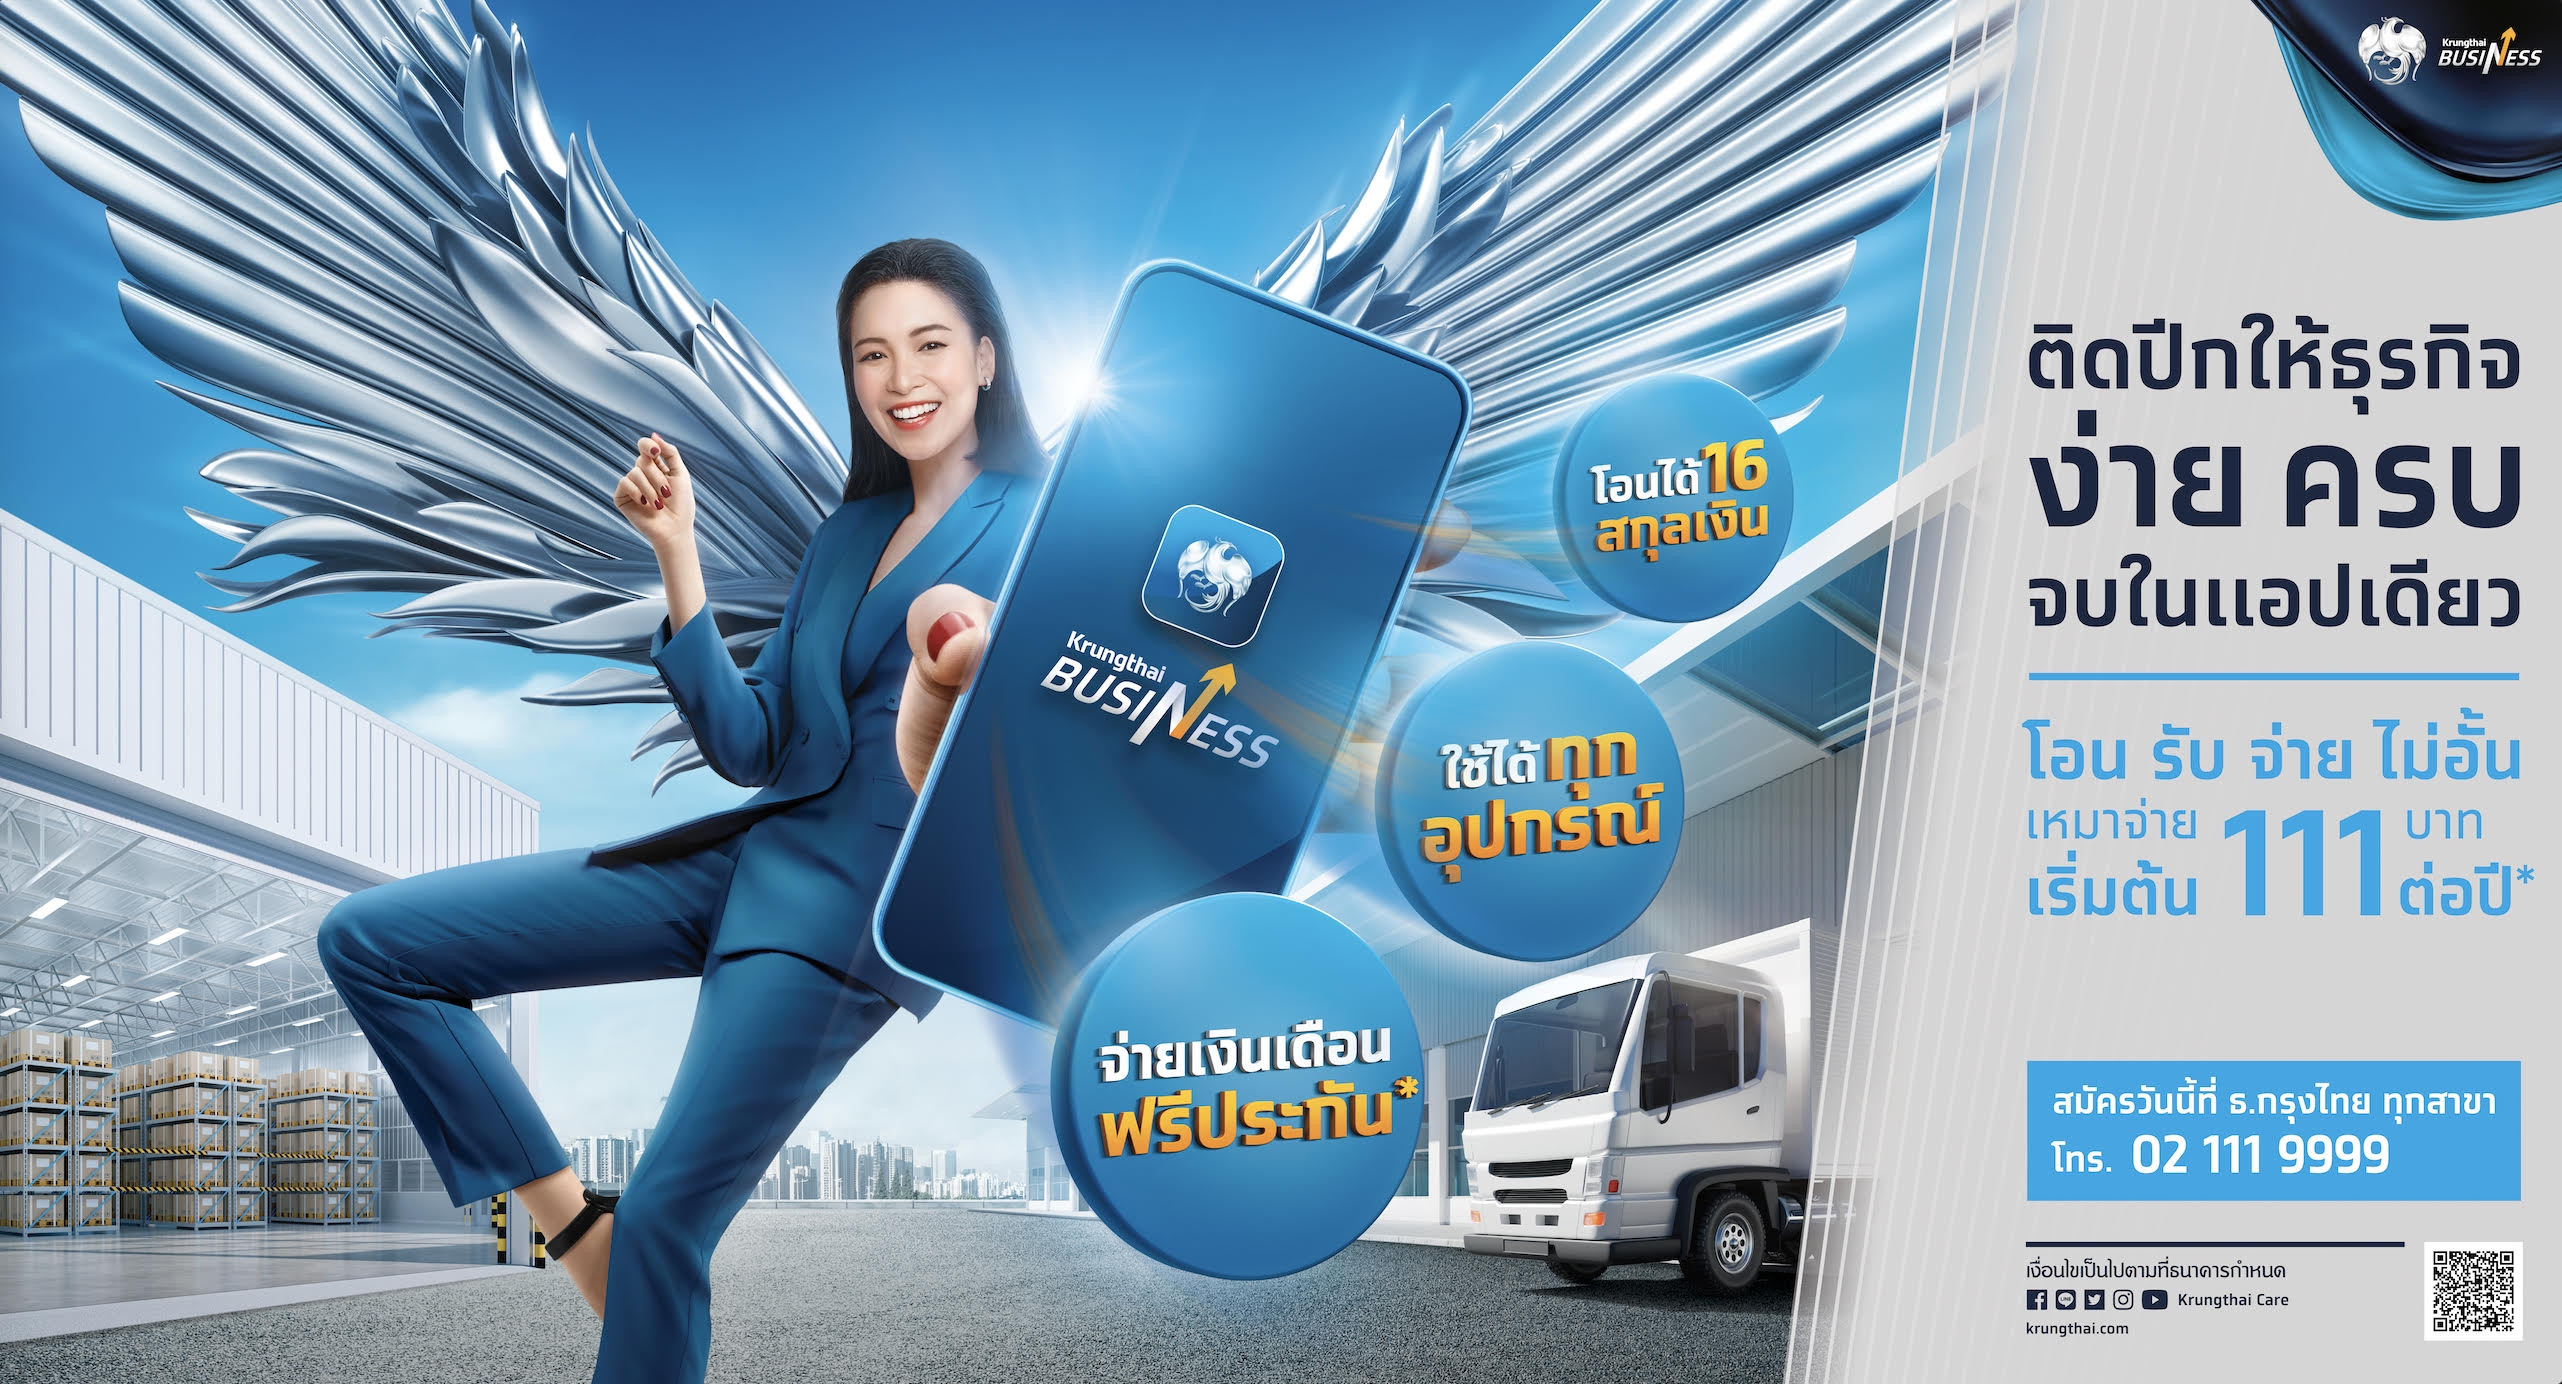 กรุงไทยเปิดตัวแอปฯ “Krungthai Business” ติดปีกธุรกิจเติบโตยั่งยืน